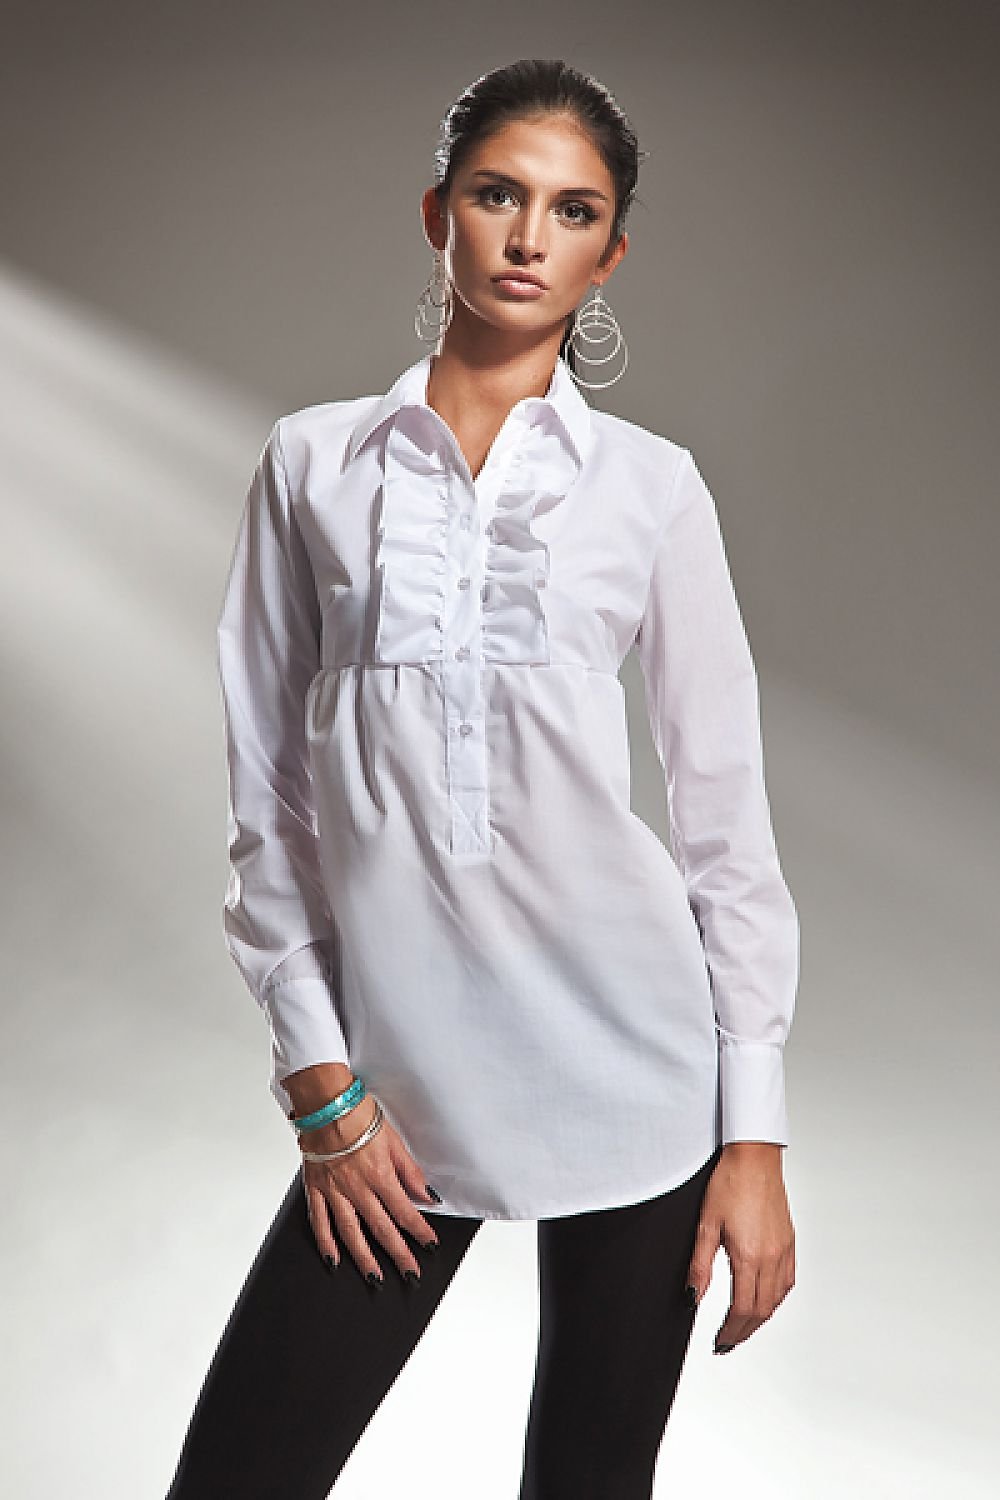 Блузка на выпуск. Рубашка женская. Рубашки женские стильные. Женские блузки и рубашки. Белая рубашка женская.